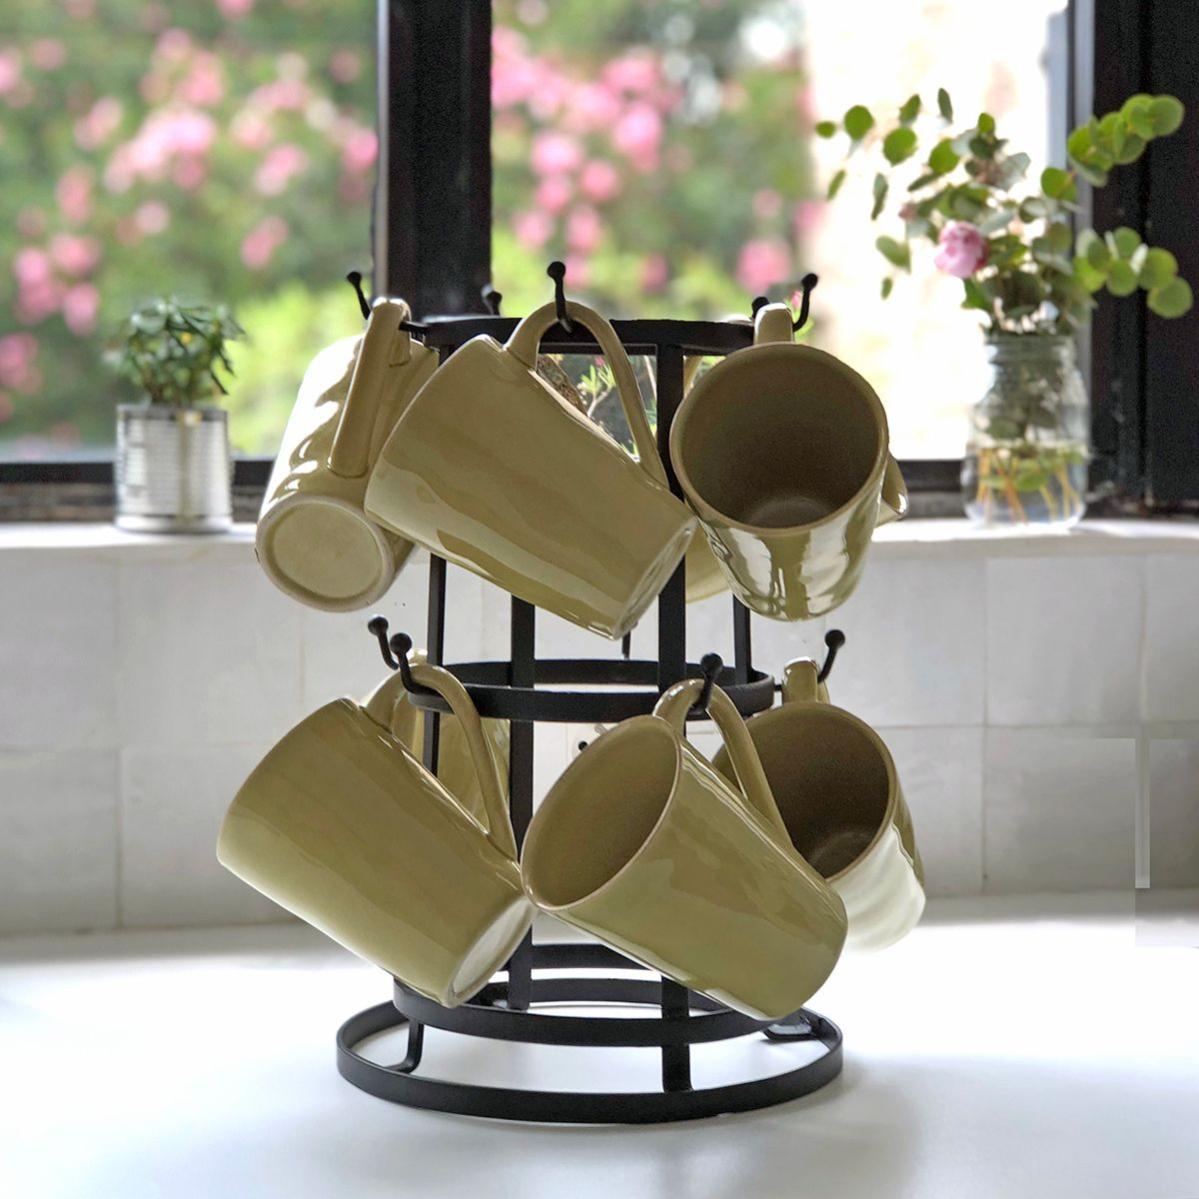 pour mugs de café à poser acier inoxydable Relaxdays porte-tasses cuisine arbre rond avec 6 barreaux argenté